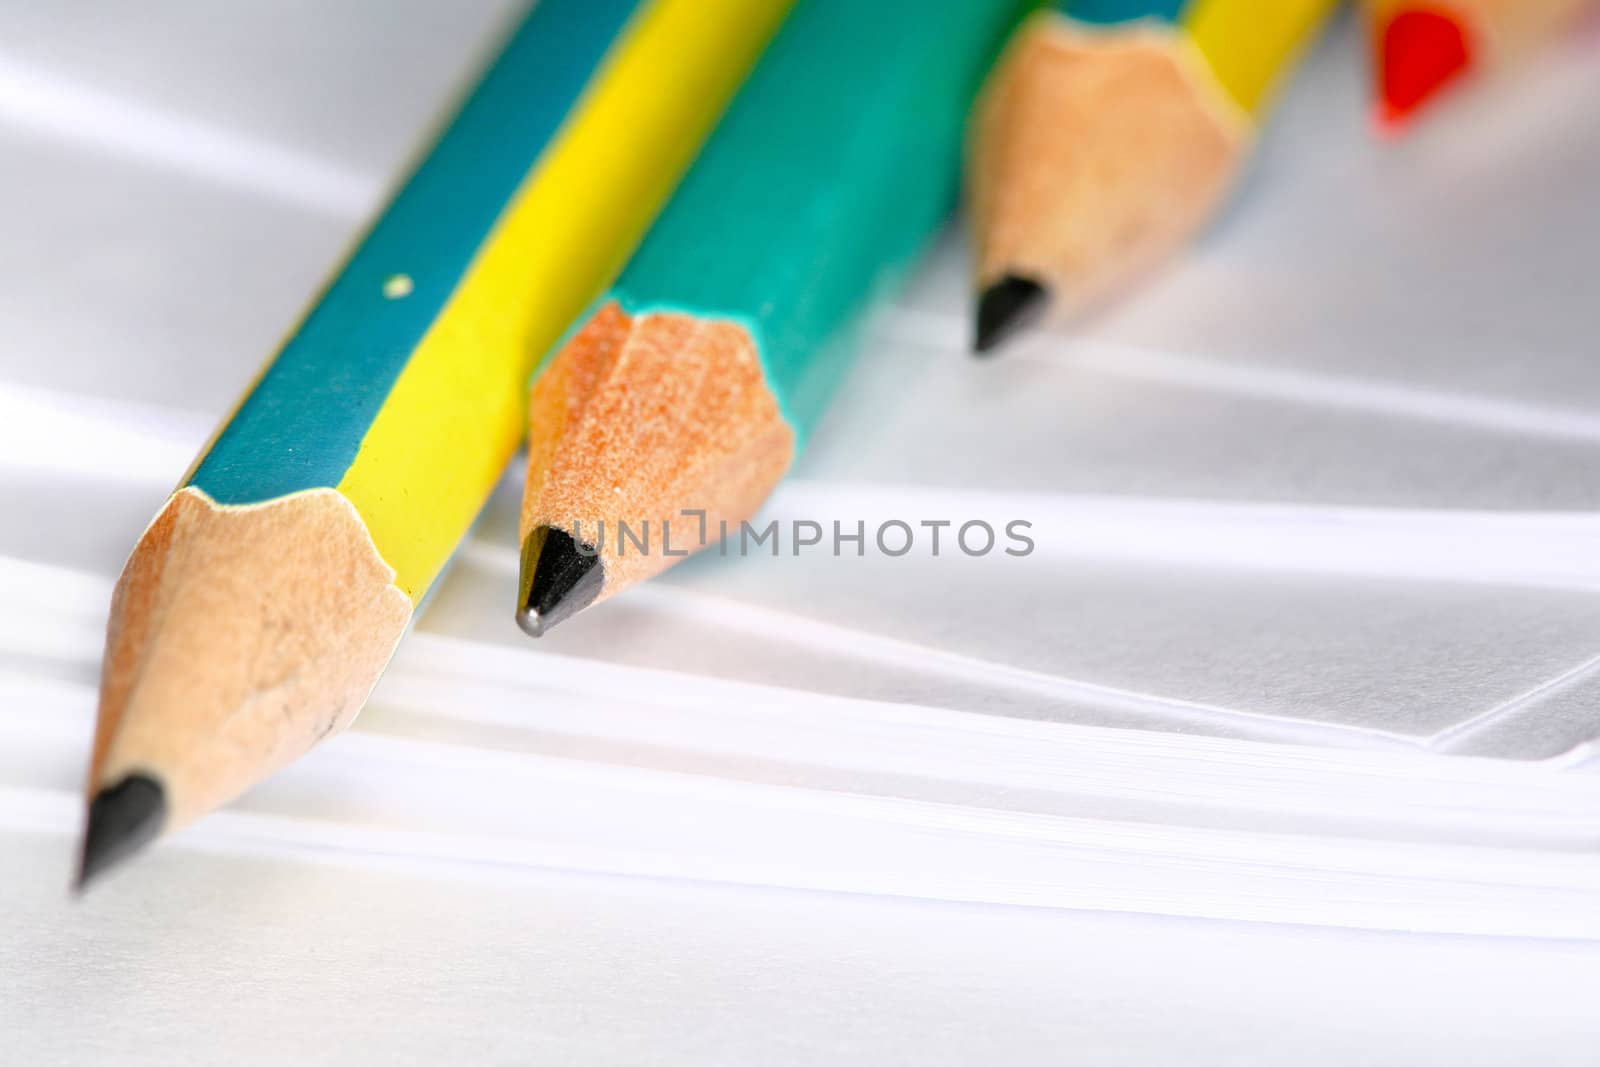 Pencils by velkol